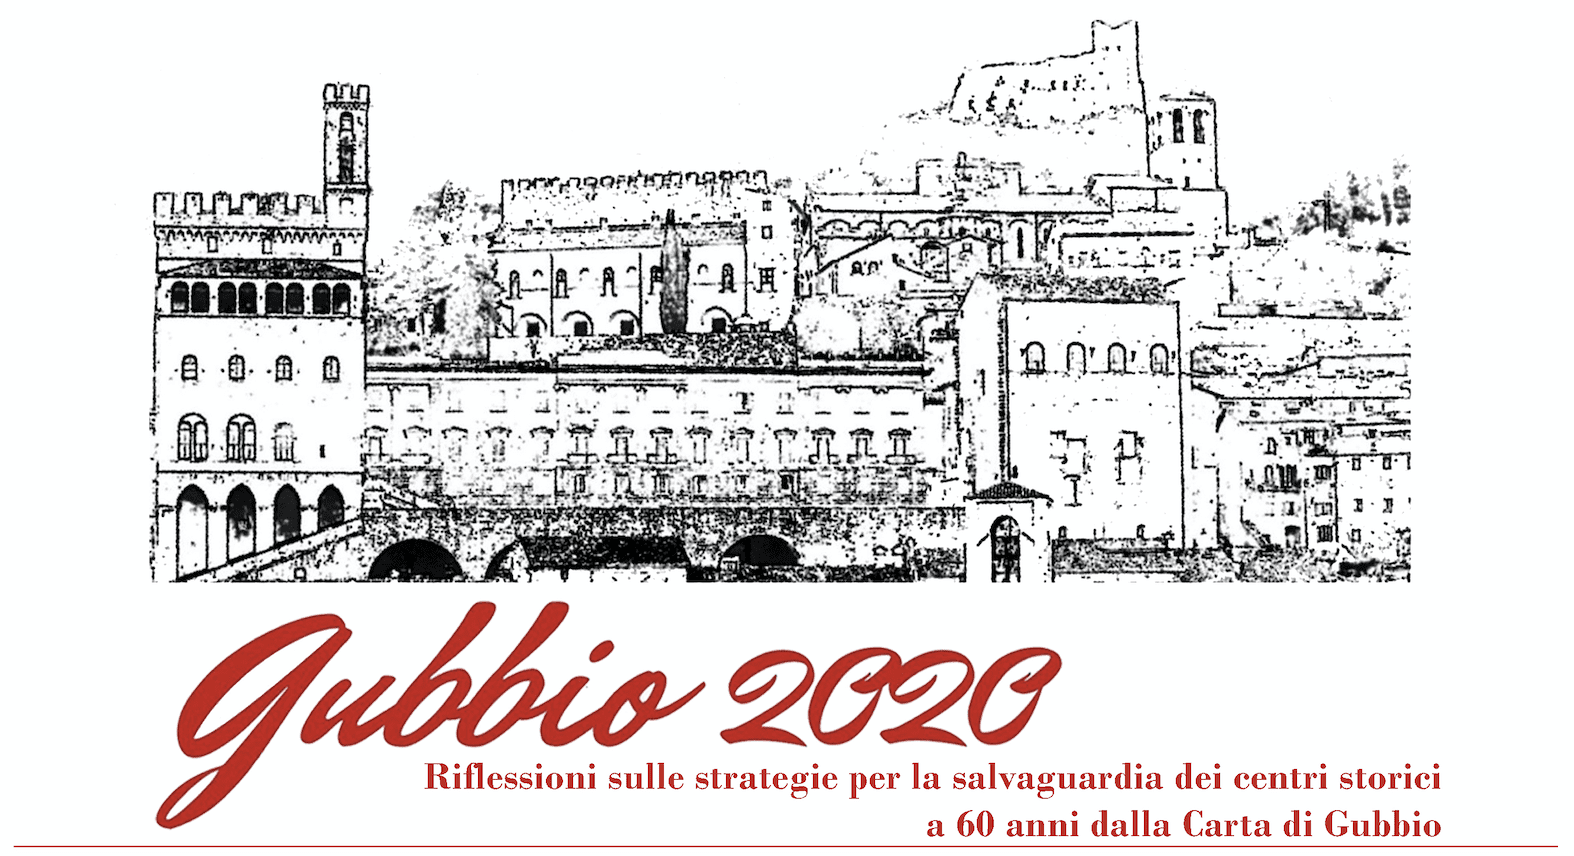 Gubbio 2020